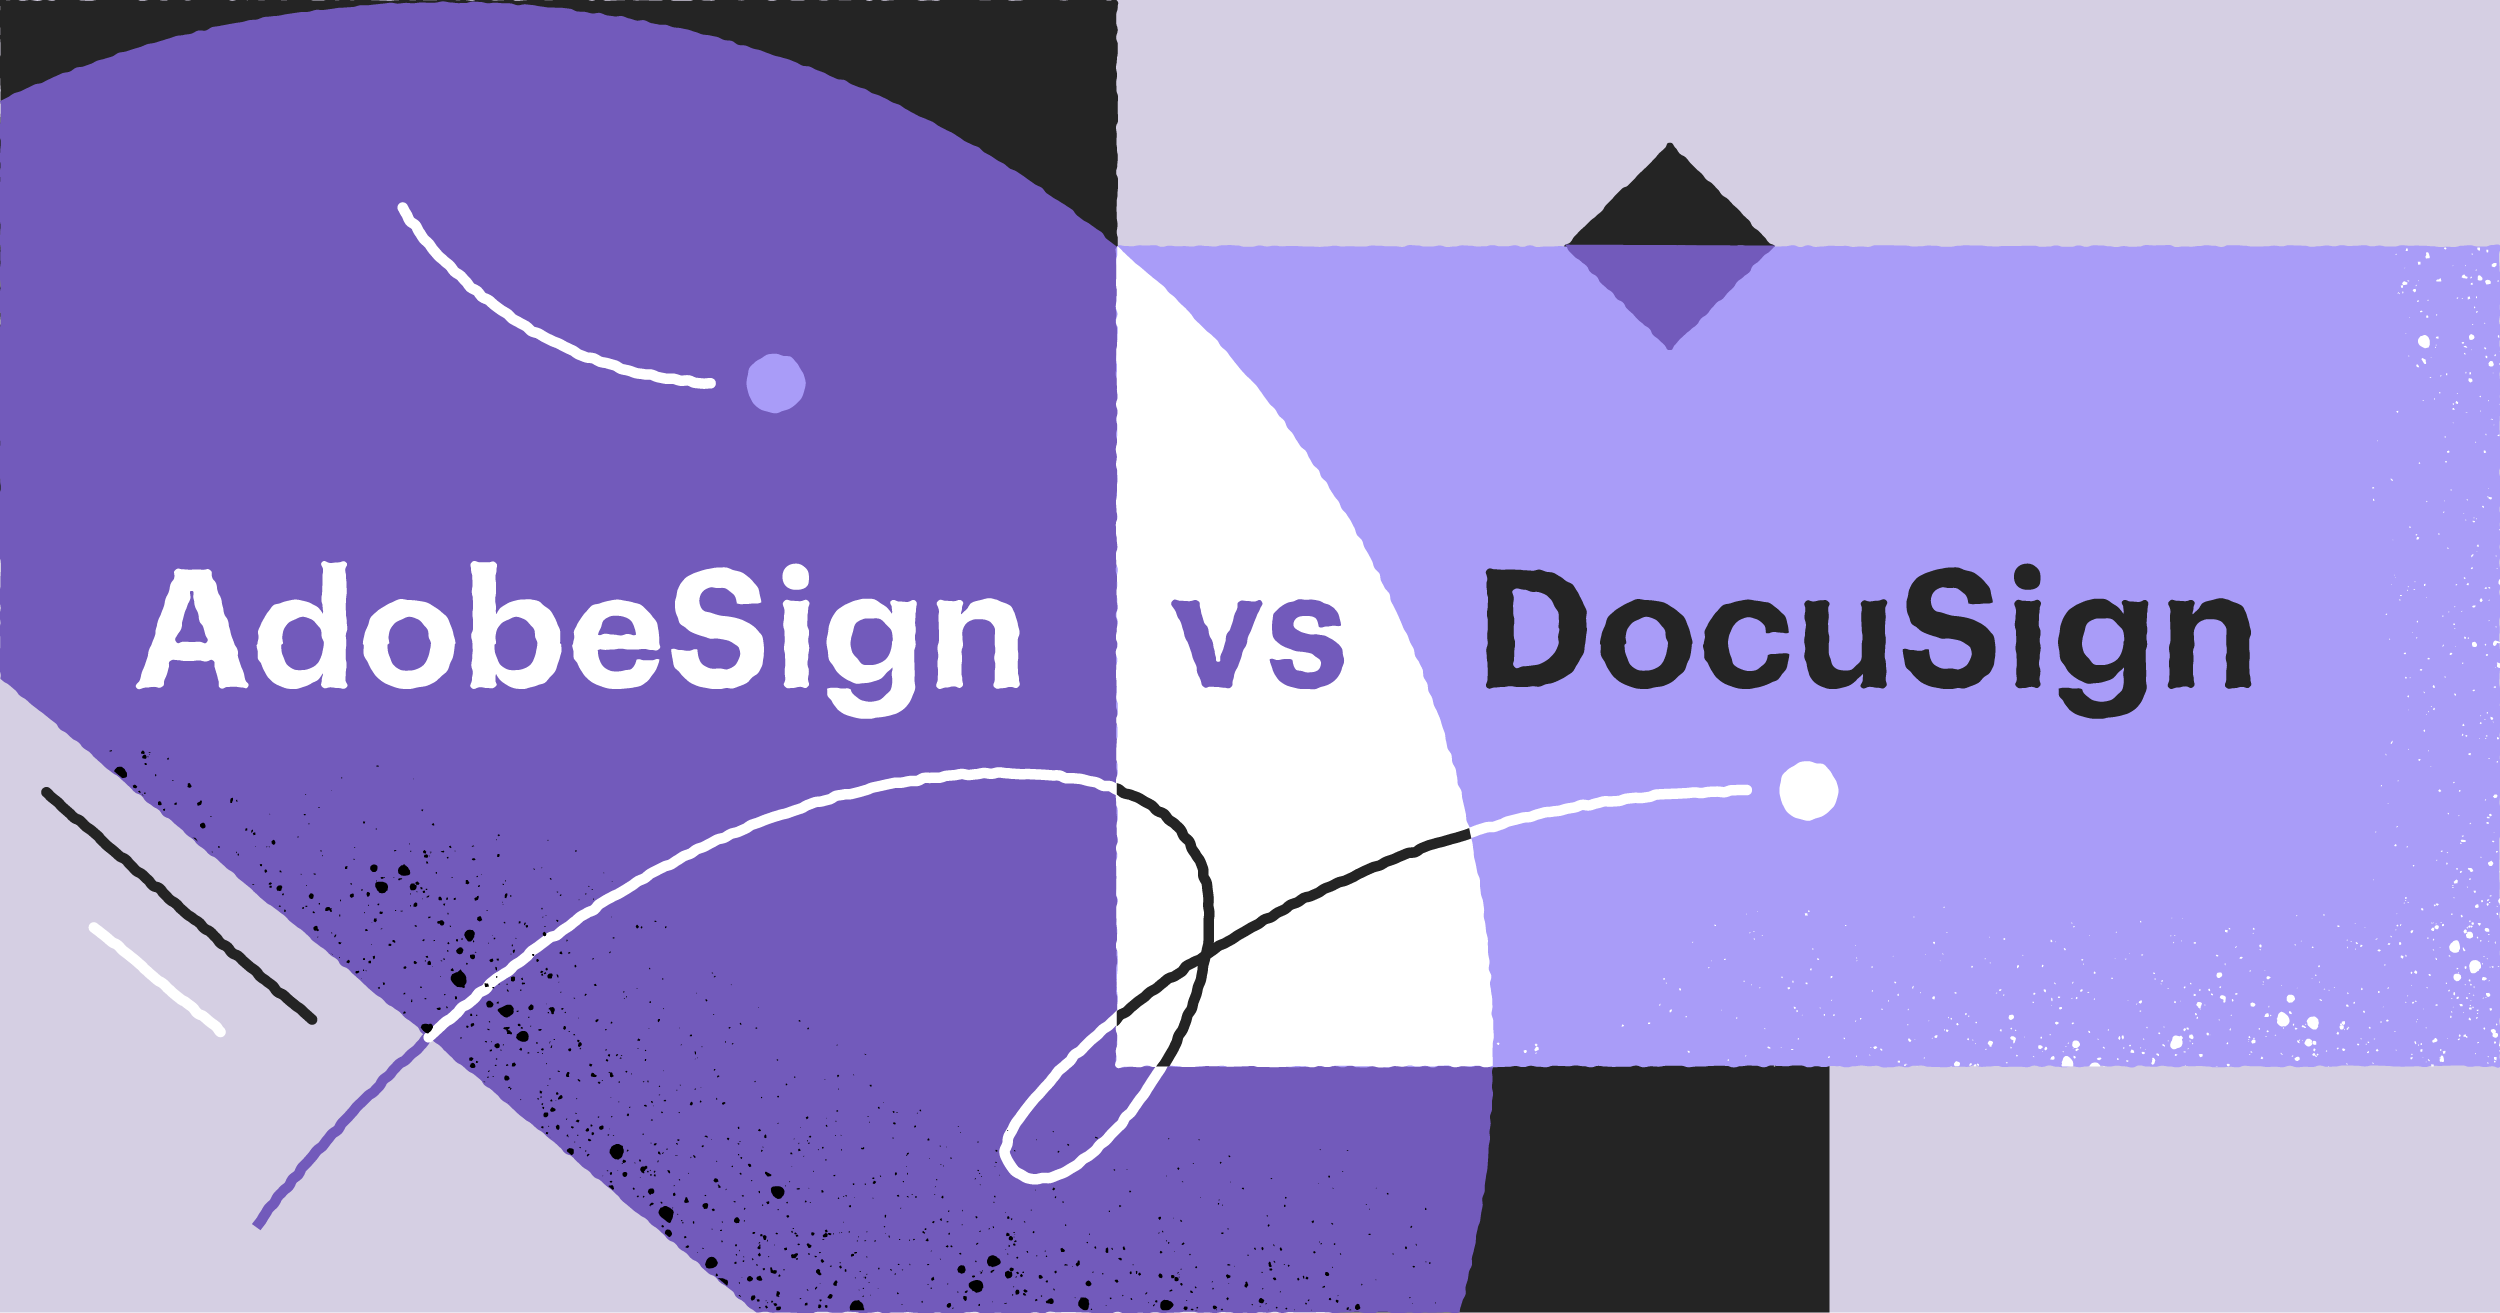 Adobe Sign vs DocuSign: 2021 comparison